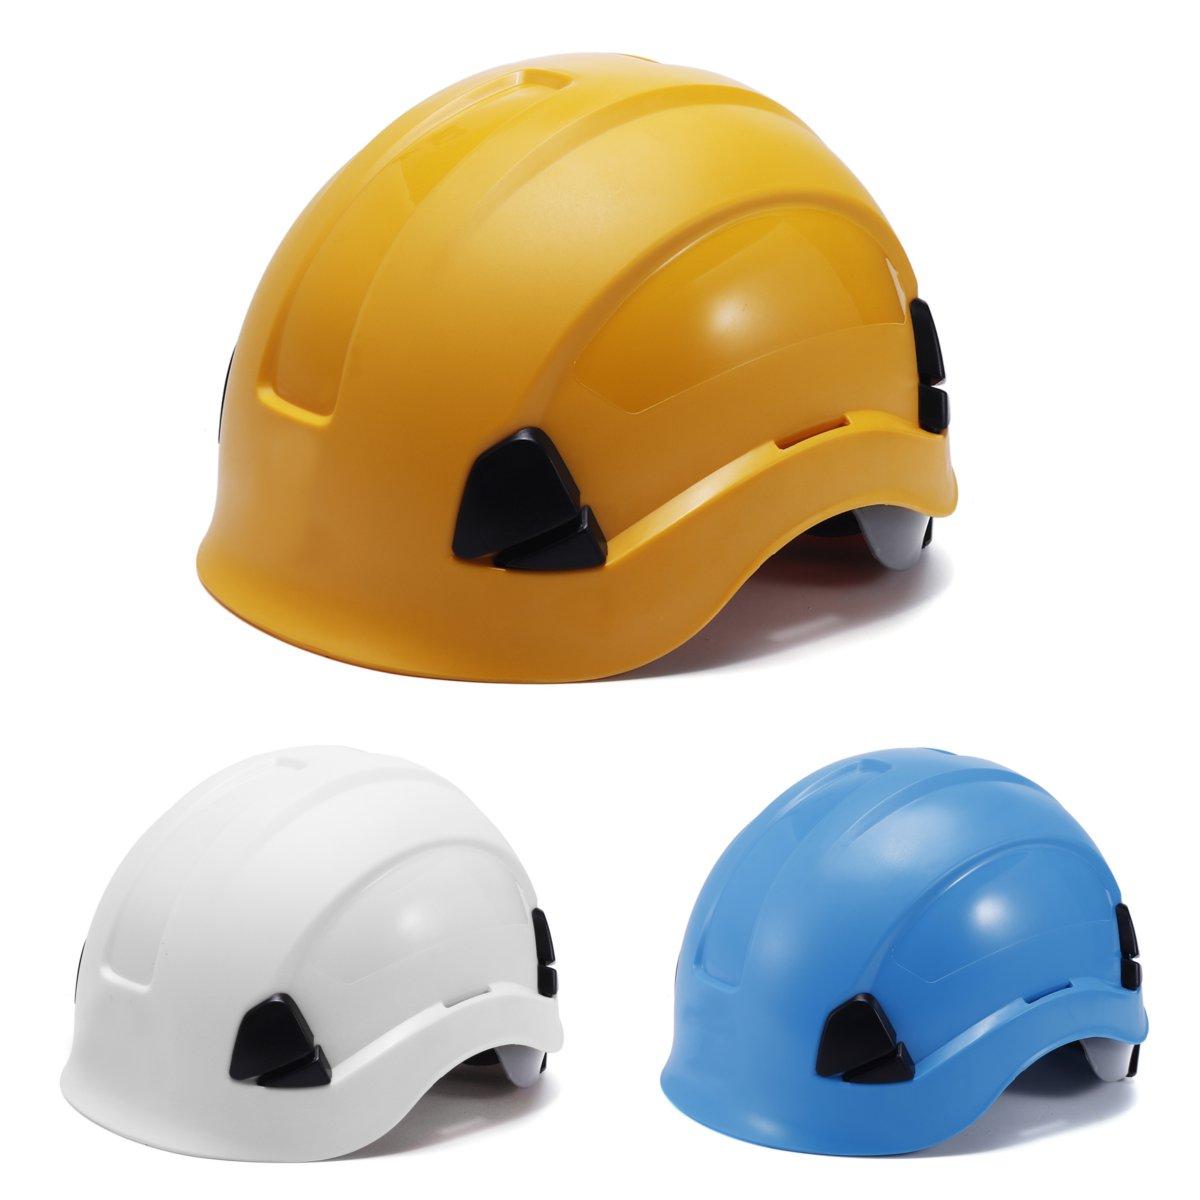 

ABS Безопасность Шлем Строительство Восхождение Steeplejack Рабочие Защитные жесткие шляпы